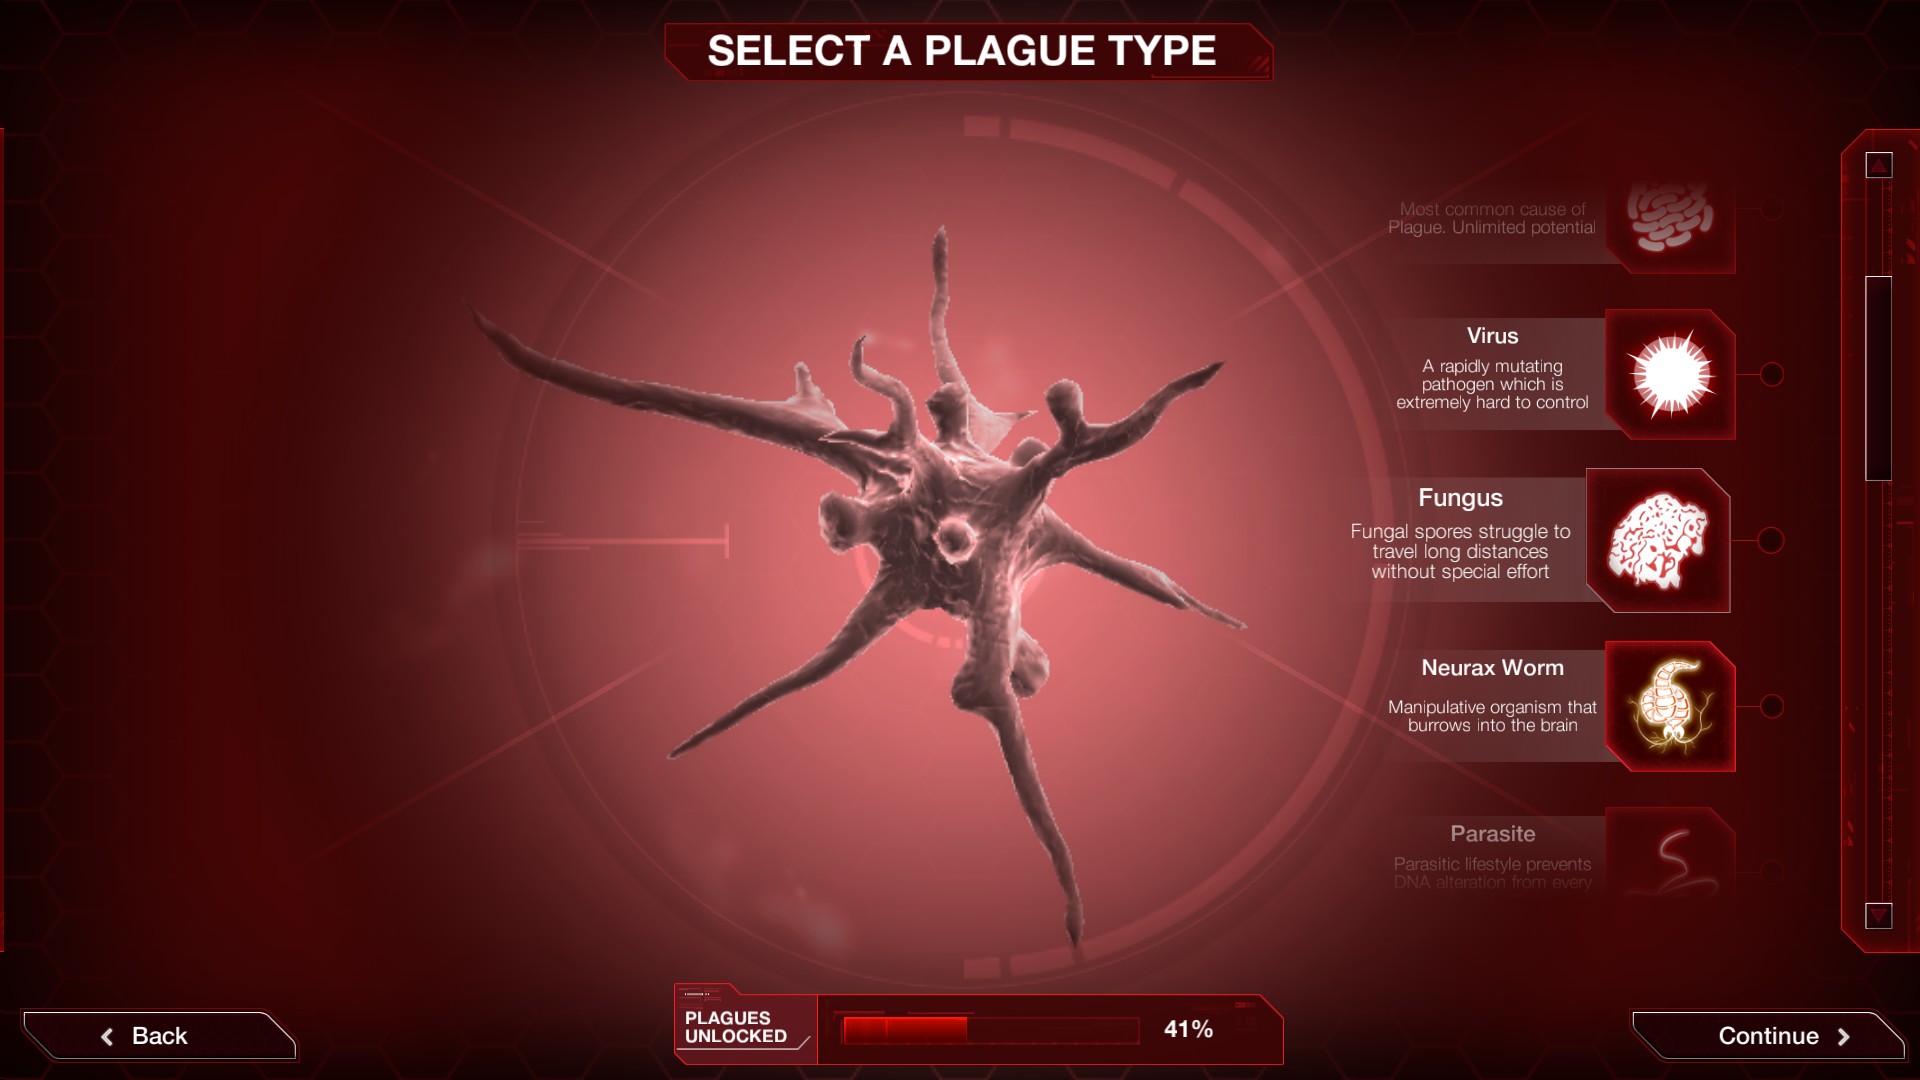 Trò chơi chiến lược di động tốt nhất: Hình ảnh Plague Inc. cho thấy một lựa chọn các bệnh dịch khác nhau, bao gồm virus, nấm, sâu thần kinh và ký sinh trùng